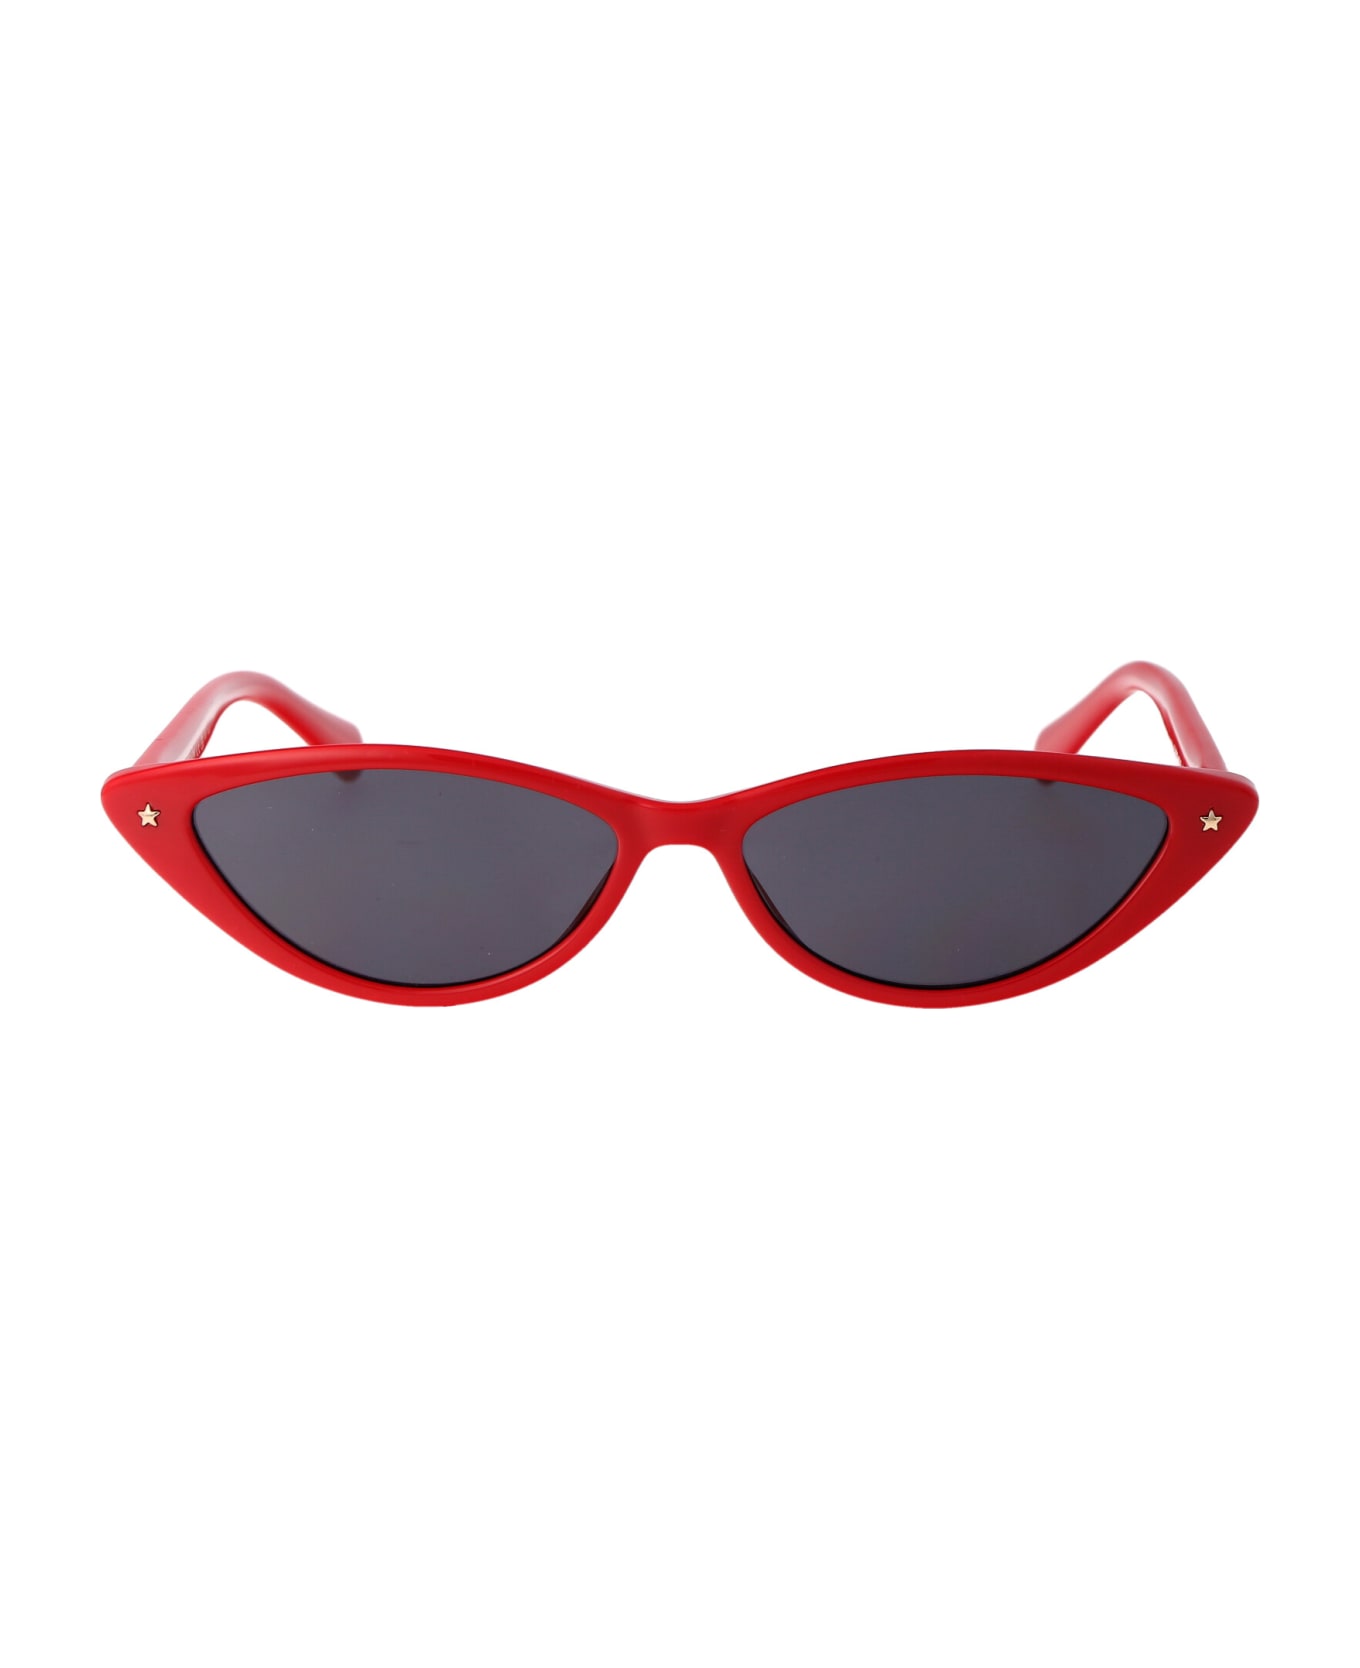 Chiara Ferragni Cf 7033/s Sunglasses - C9AIR RED サングラス